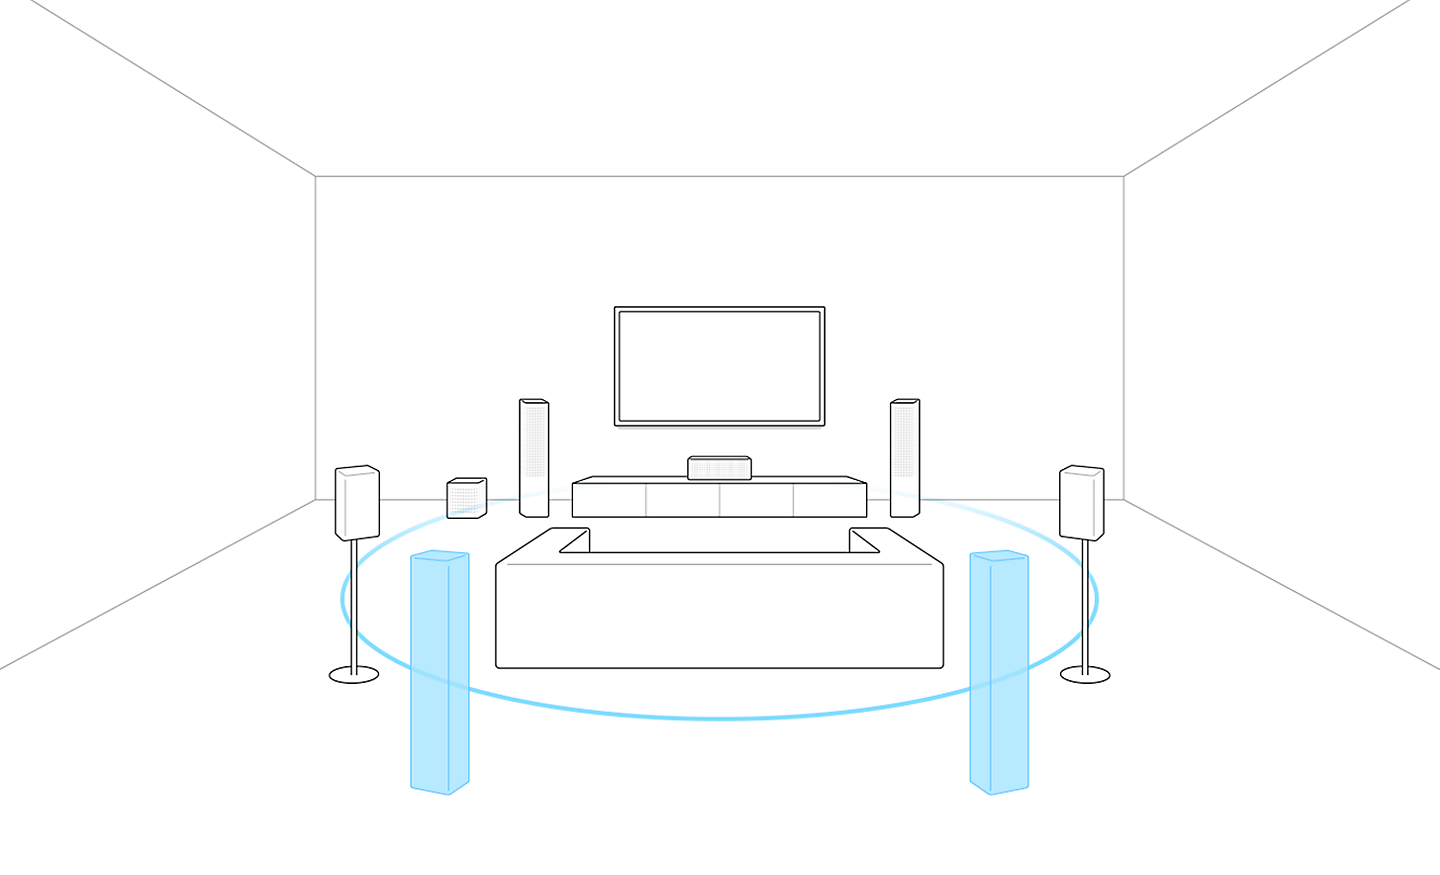 Obrázok televízora so sedačkou a reproduktormi. Dva reproduktory v modrej farbe sú za sedačkou